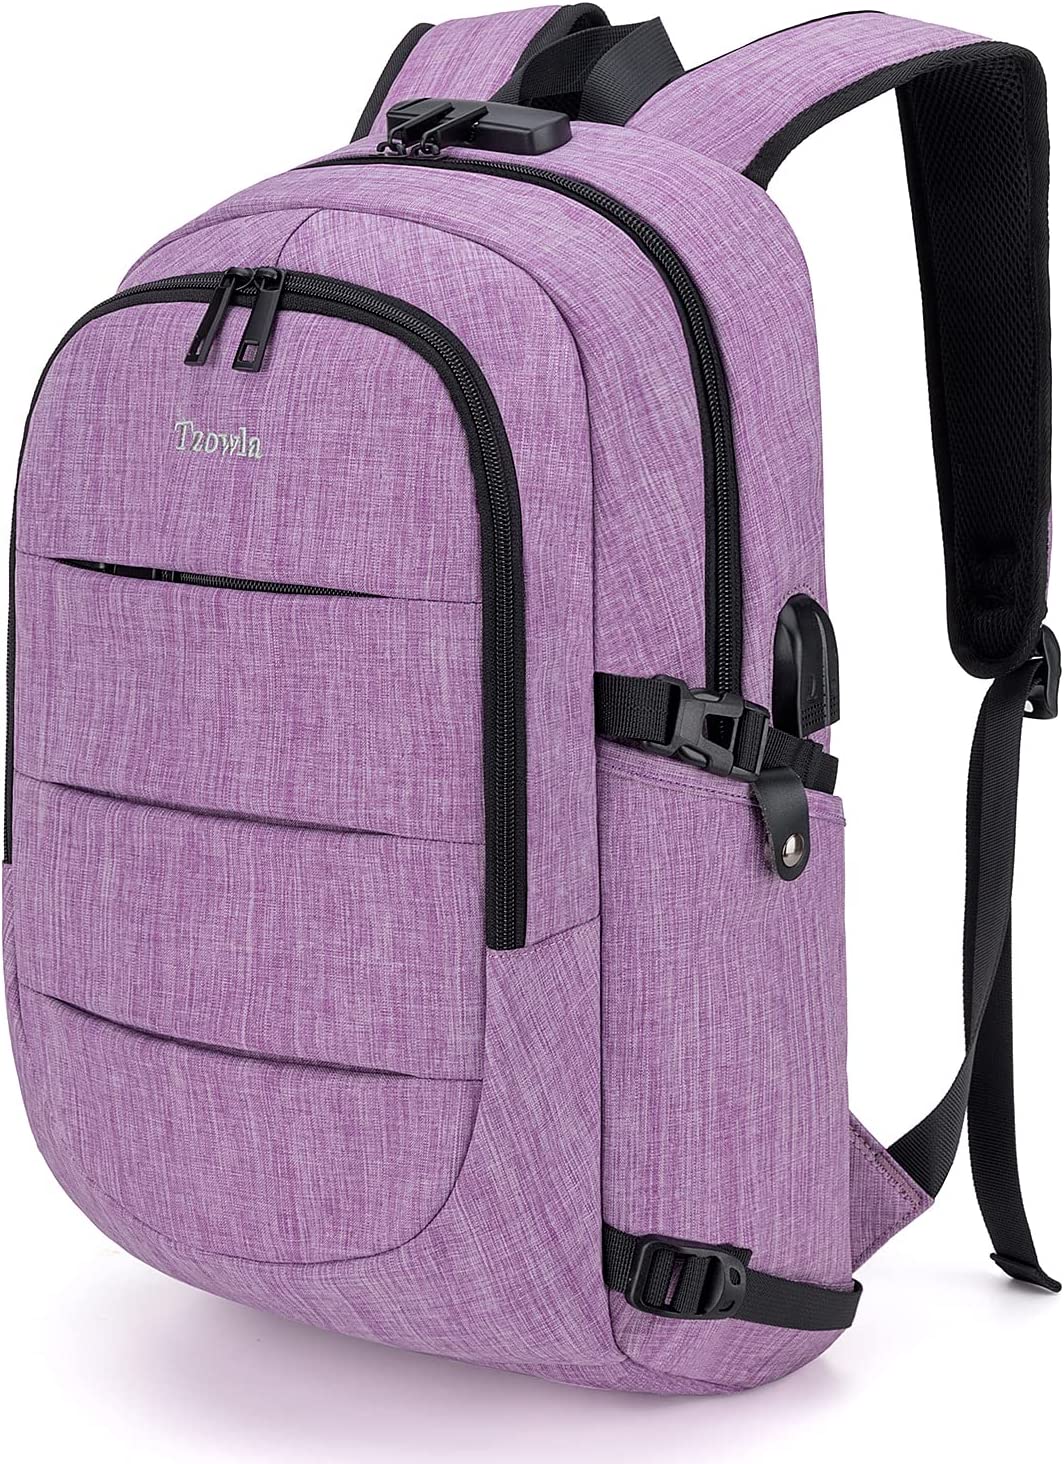 کوله پشتی با محفظه لپ تاپ Tzowla مدل laptop backpack - ارسال ۱۰ الی ۱۵ روز کاری